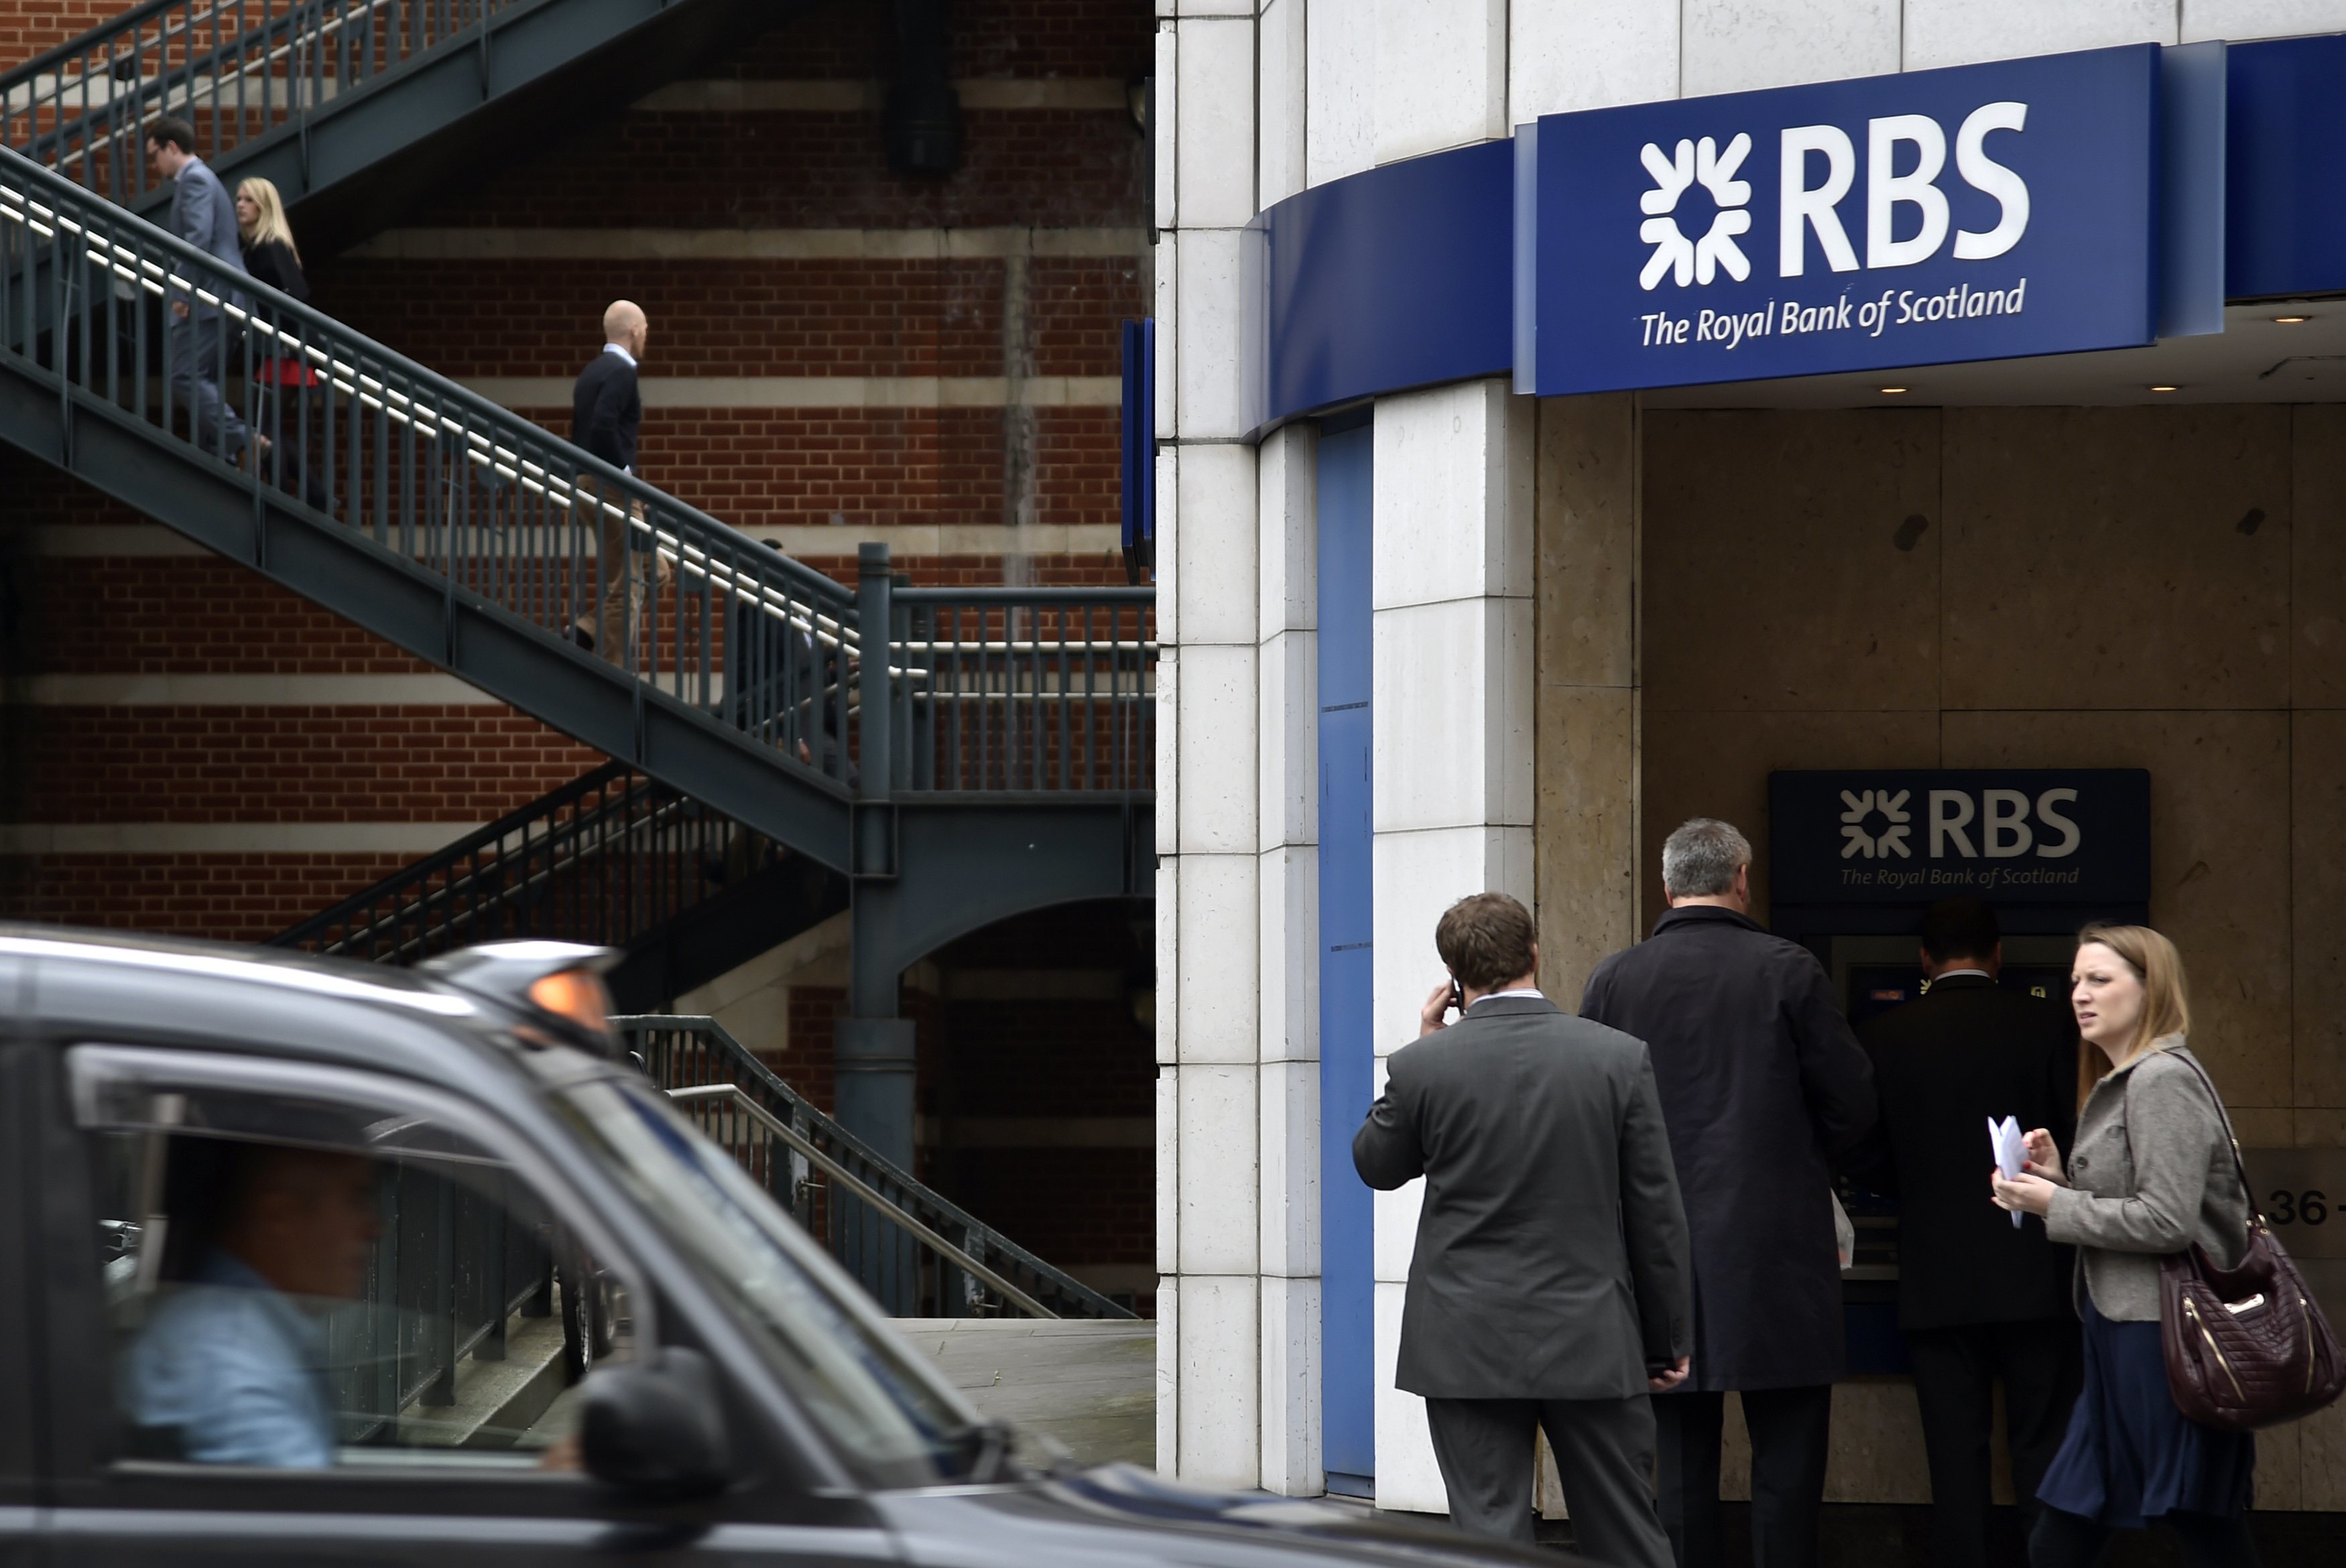 5 группа банка. Royal Bank of Scotland (RBS) Group. Логотип Royal Bank of Scotland. Королевские банки. РБС банк.